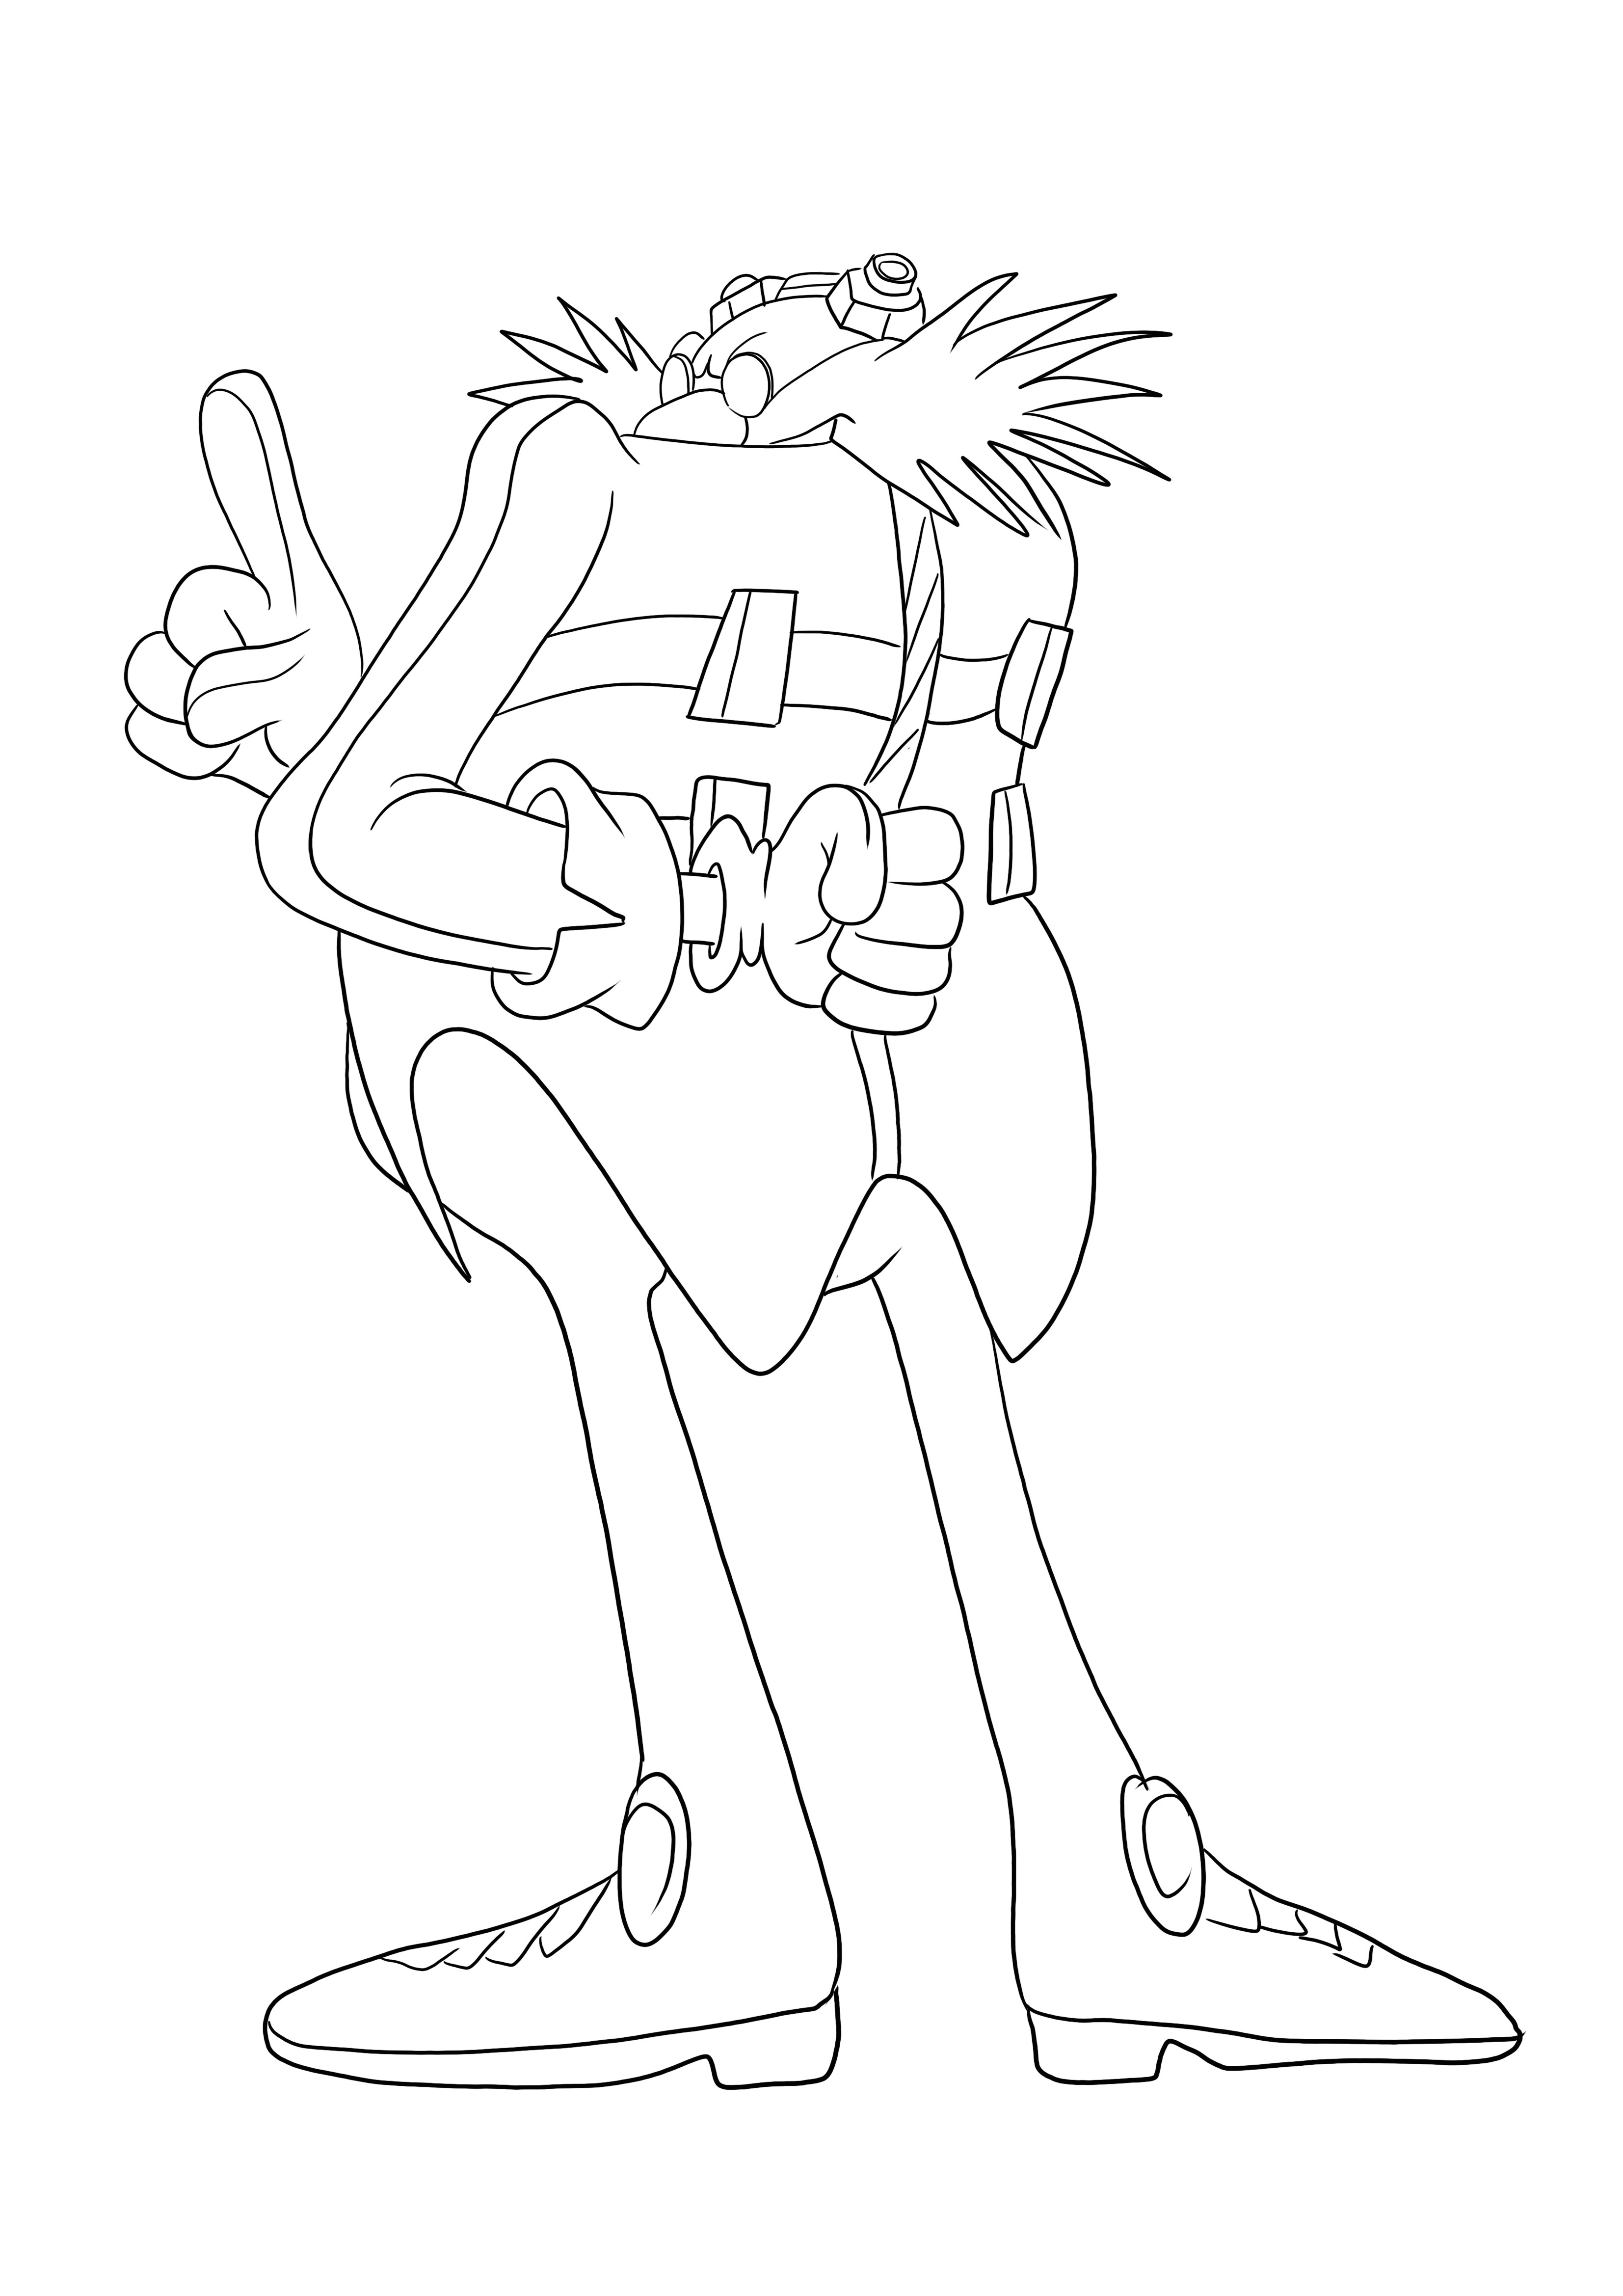 Oto Dr Eggman z serii Sonic, który można bezpłatnie wydrukować i łatwo pokolorować